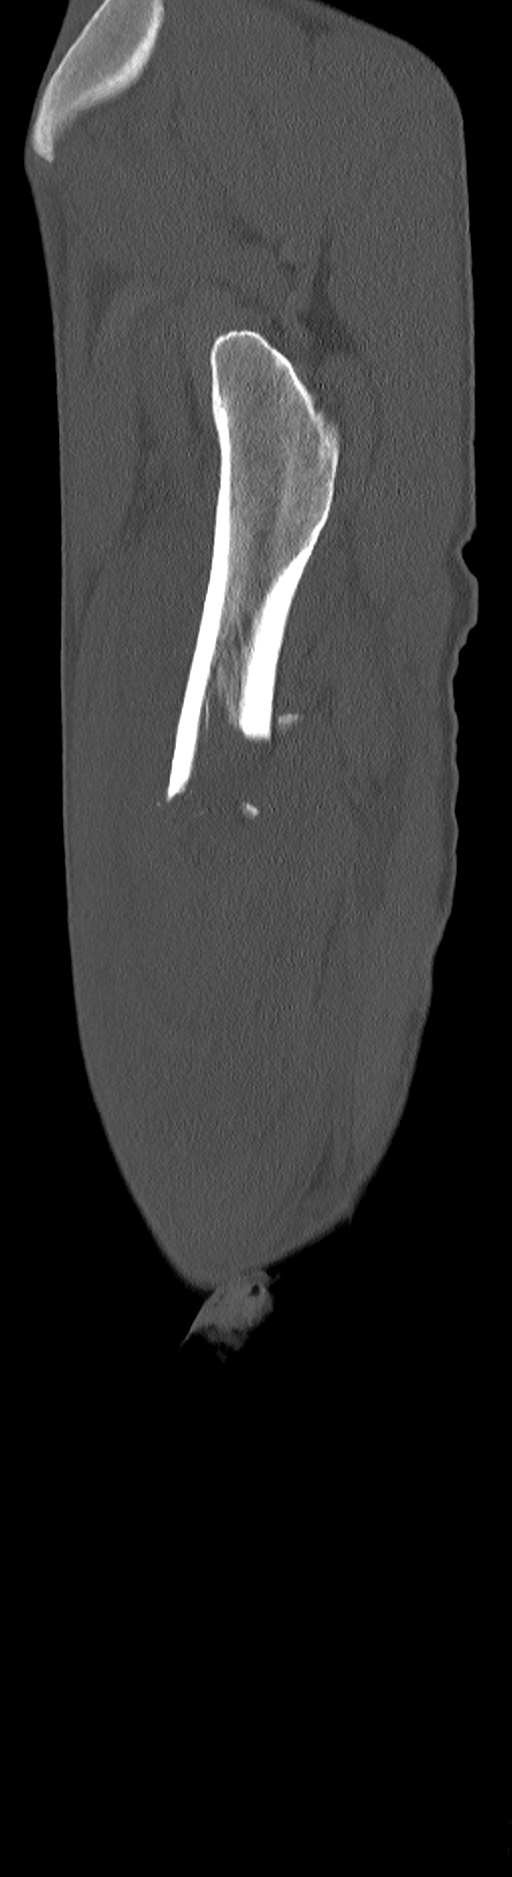 Chronic osteomyelitis (with sequestrum) (Radiopaedia 74813-85822 C 95).jpg